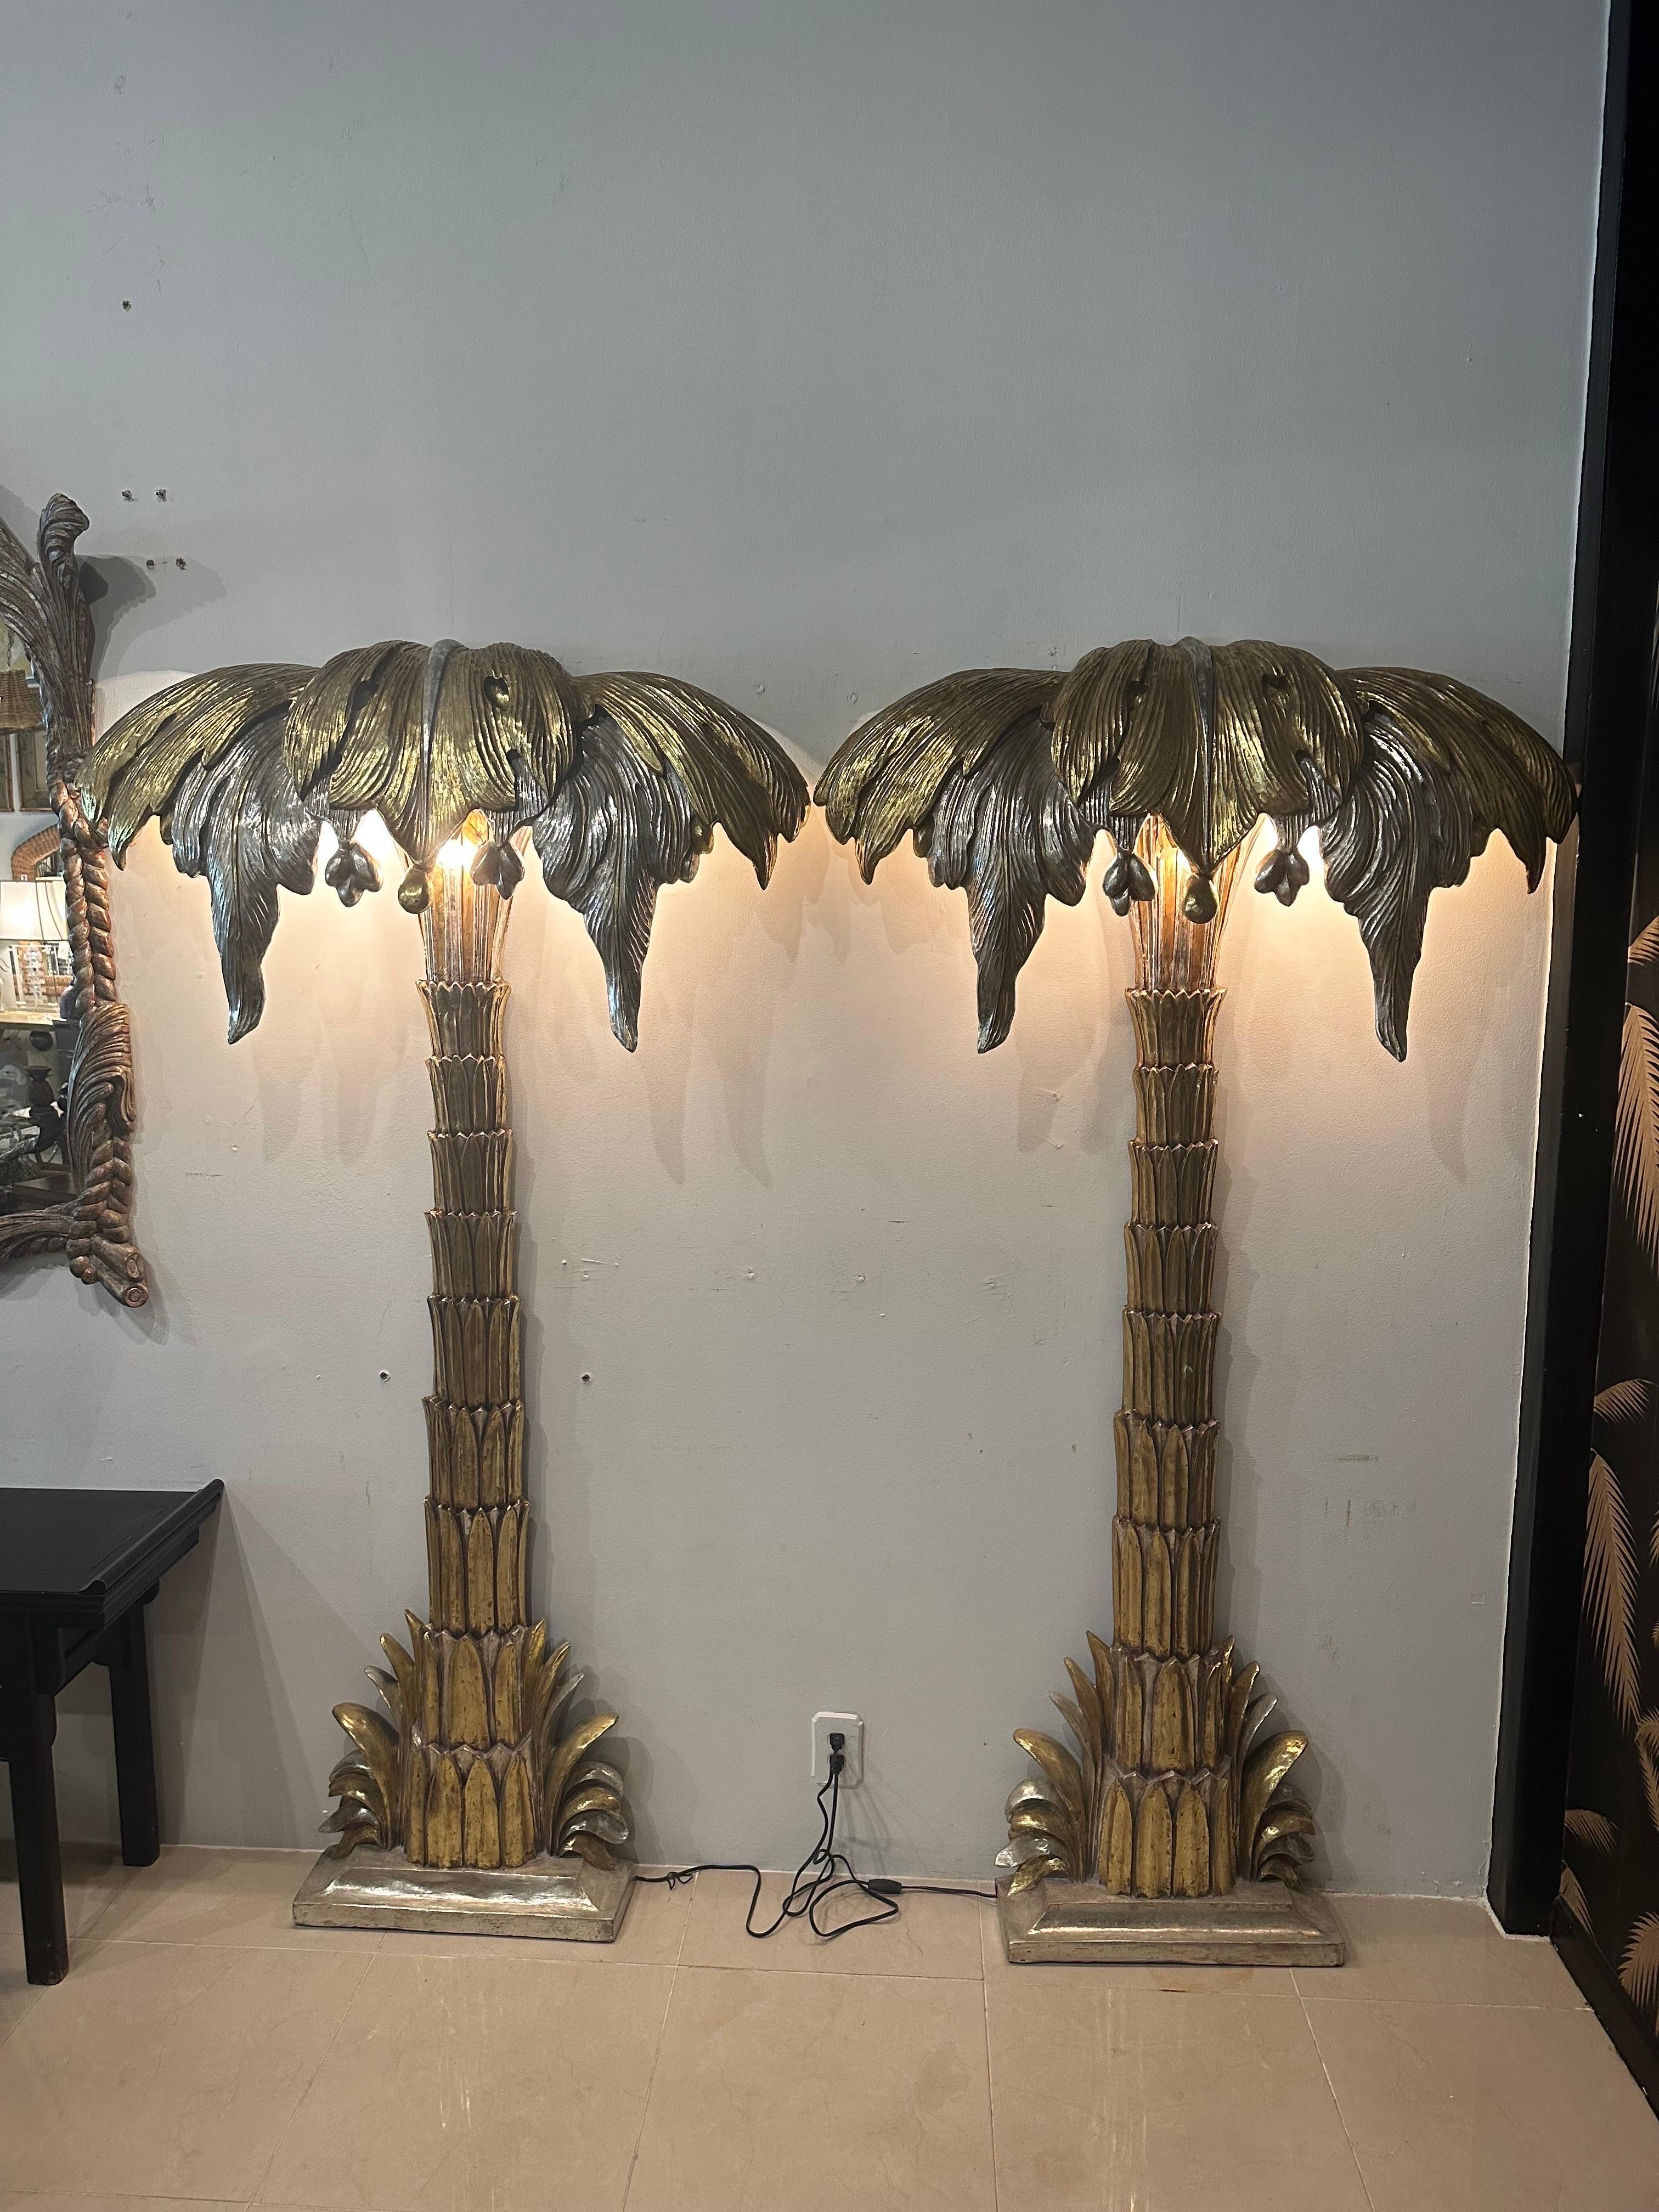 Superbe paire de lampadaires muraux en forme de palmier de taille monumentale par la Maison Jansen. Argent et or doré. Finition originale. Pas d'ébréchures ni de cassures. Chacune d'entre elles comporte 3 ampoules sous les feuilles de palmier. Ils